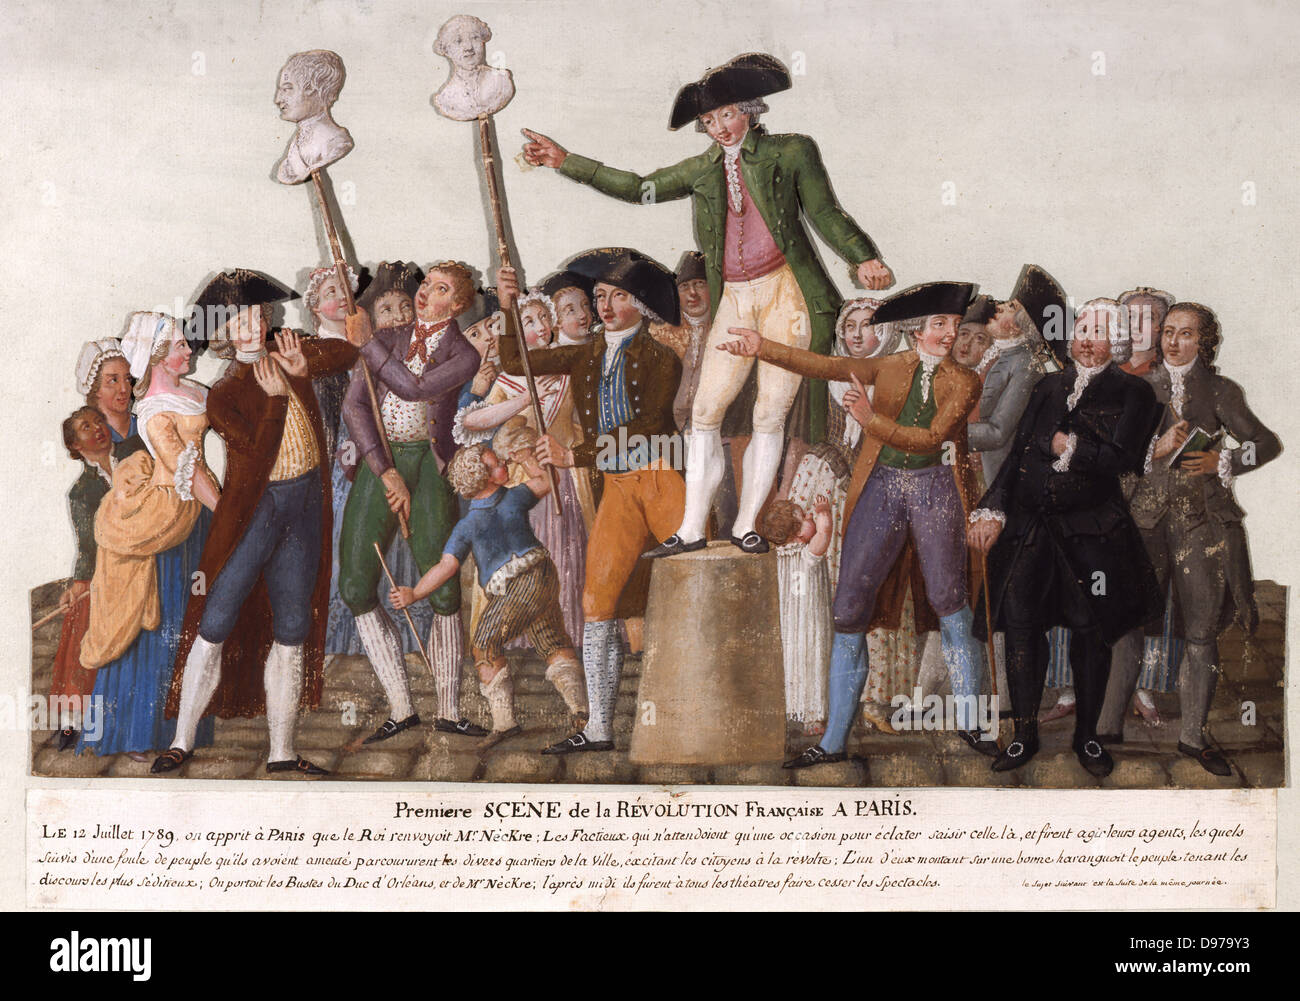 Pierre Etienne Lesueur On July 12, 1789 Carnavalet Museum - Paris Stock Photo